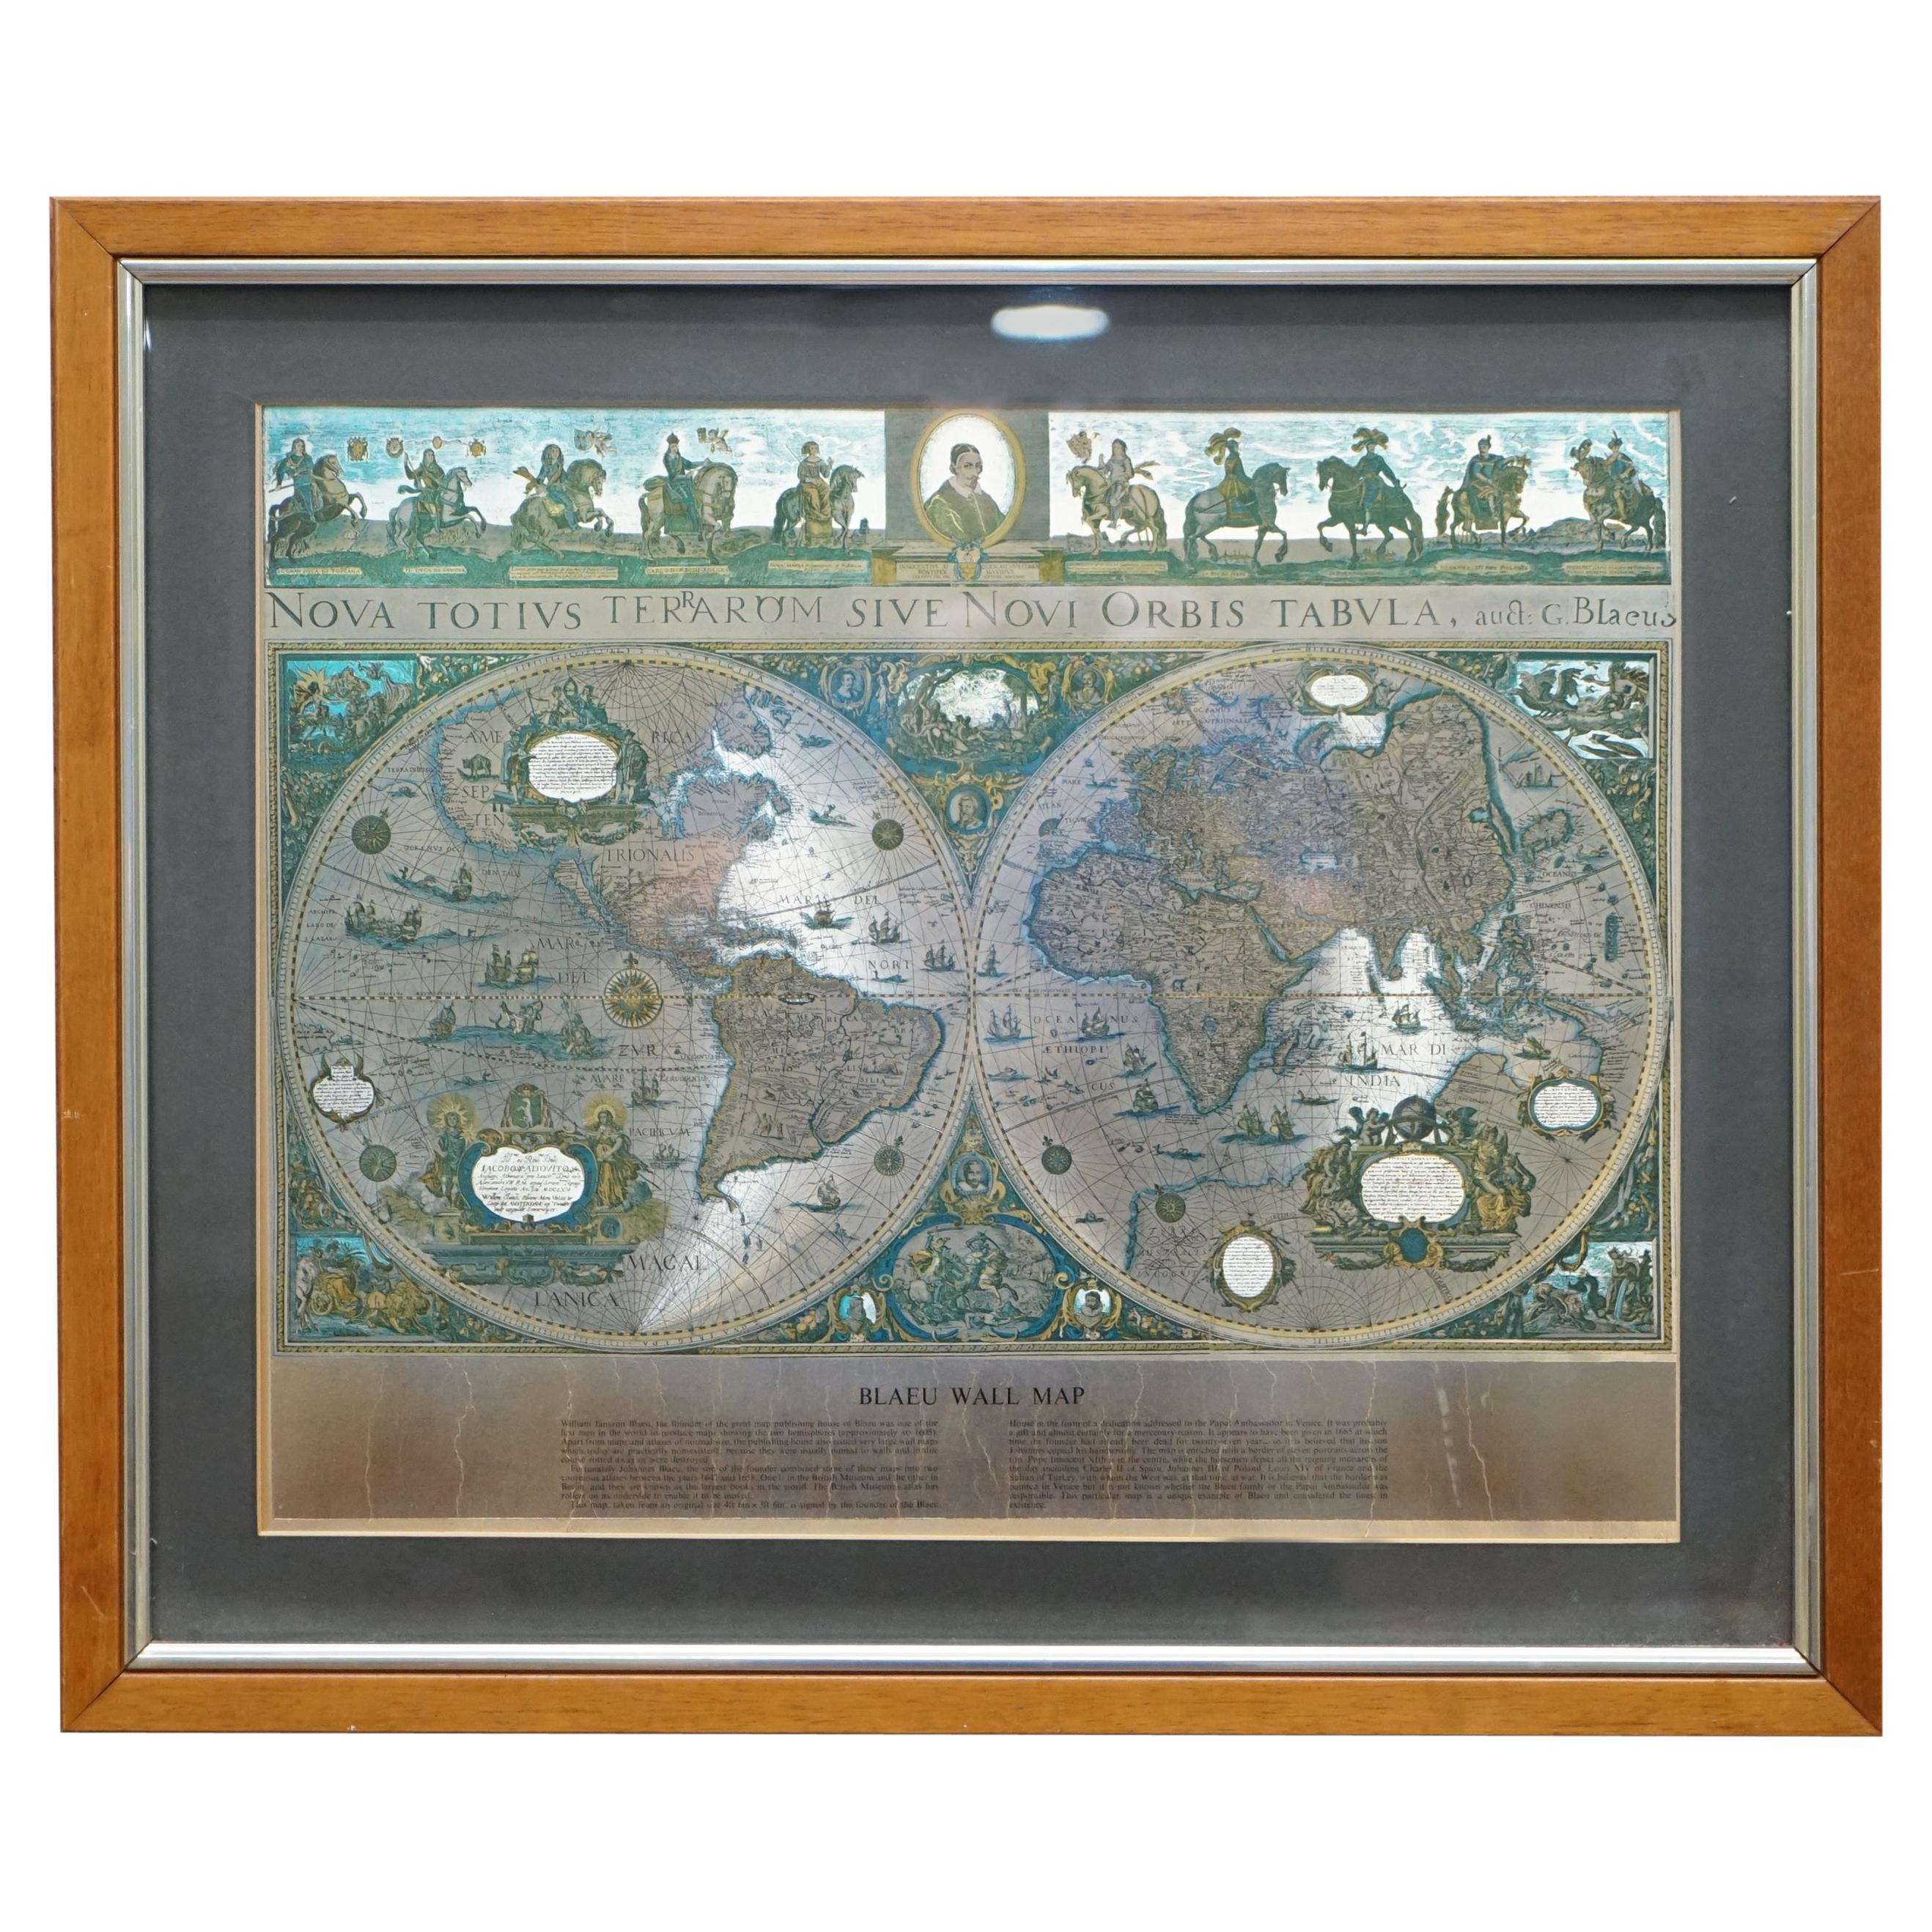 Carte du monde imprimée à la feuille d'argent sur base d'une carte murale originale de Willem Blaeu 1571-1638